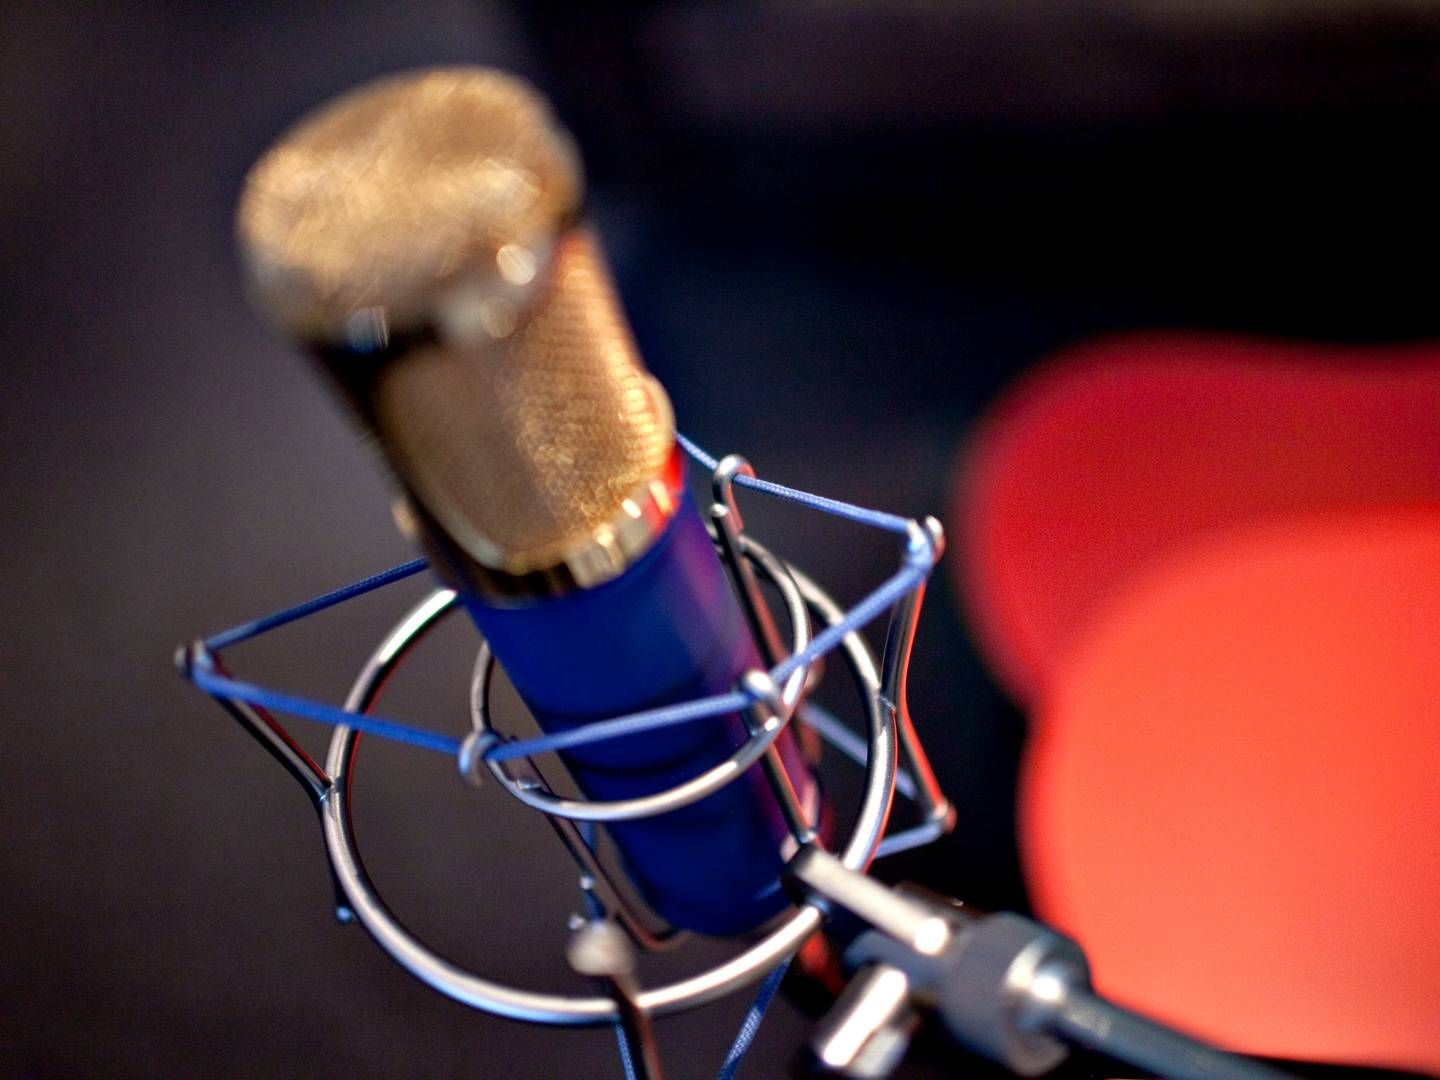 Podcastformater bliver ikke anerkendt nok, mener Third Ear Studios svenske ledelse efter mediestøtte-afslag. | Photo: Miriam Dalsgaard